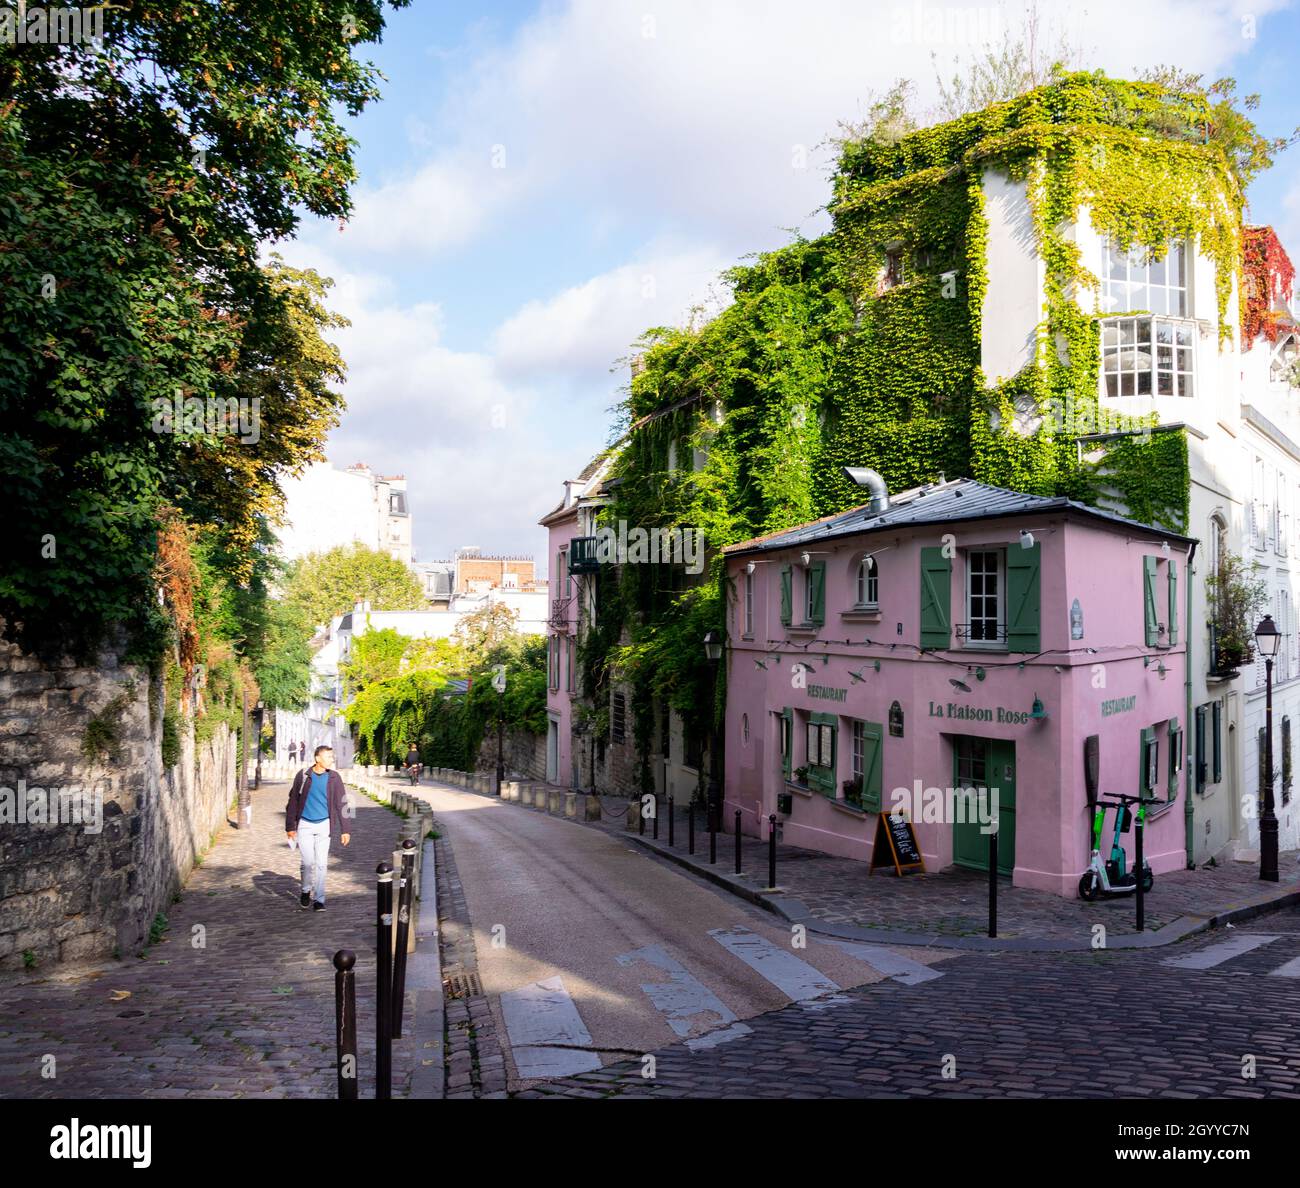 La maison Rose à Montmartre Paris, le restaurant le plus photographié de Paris Banque D'Images